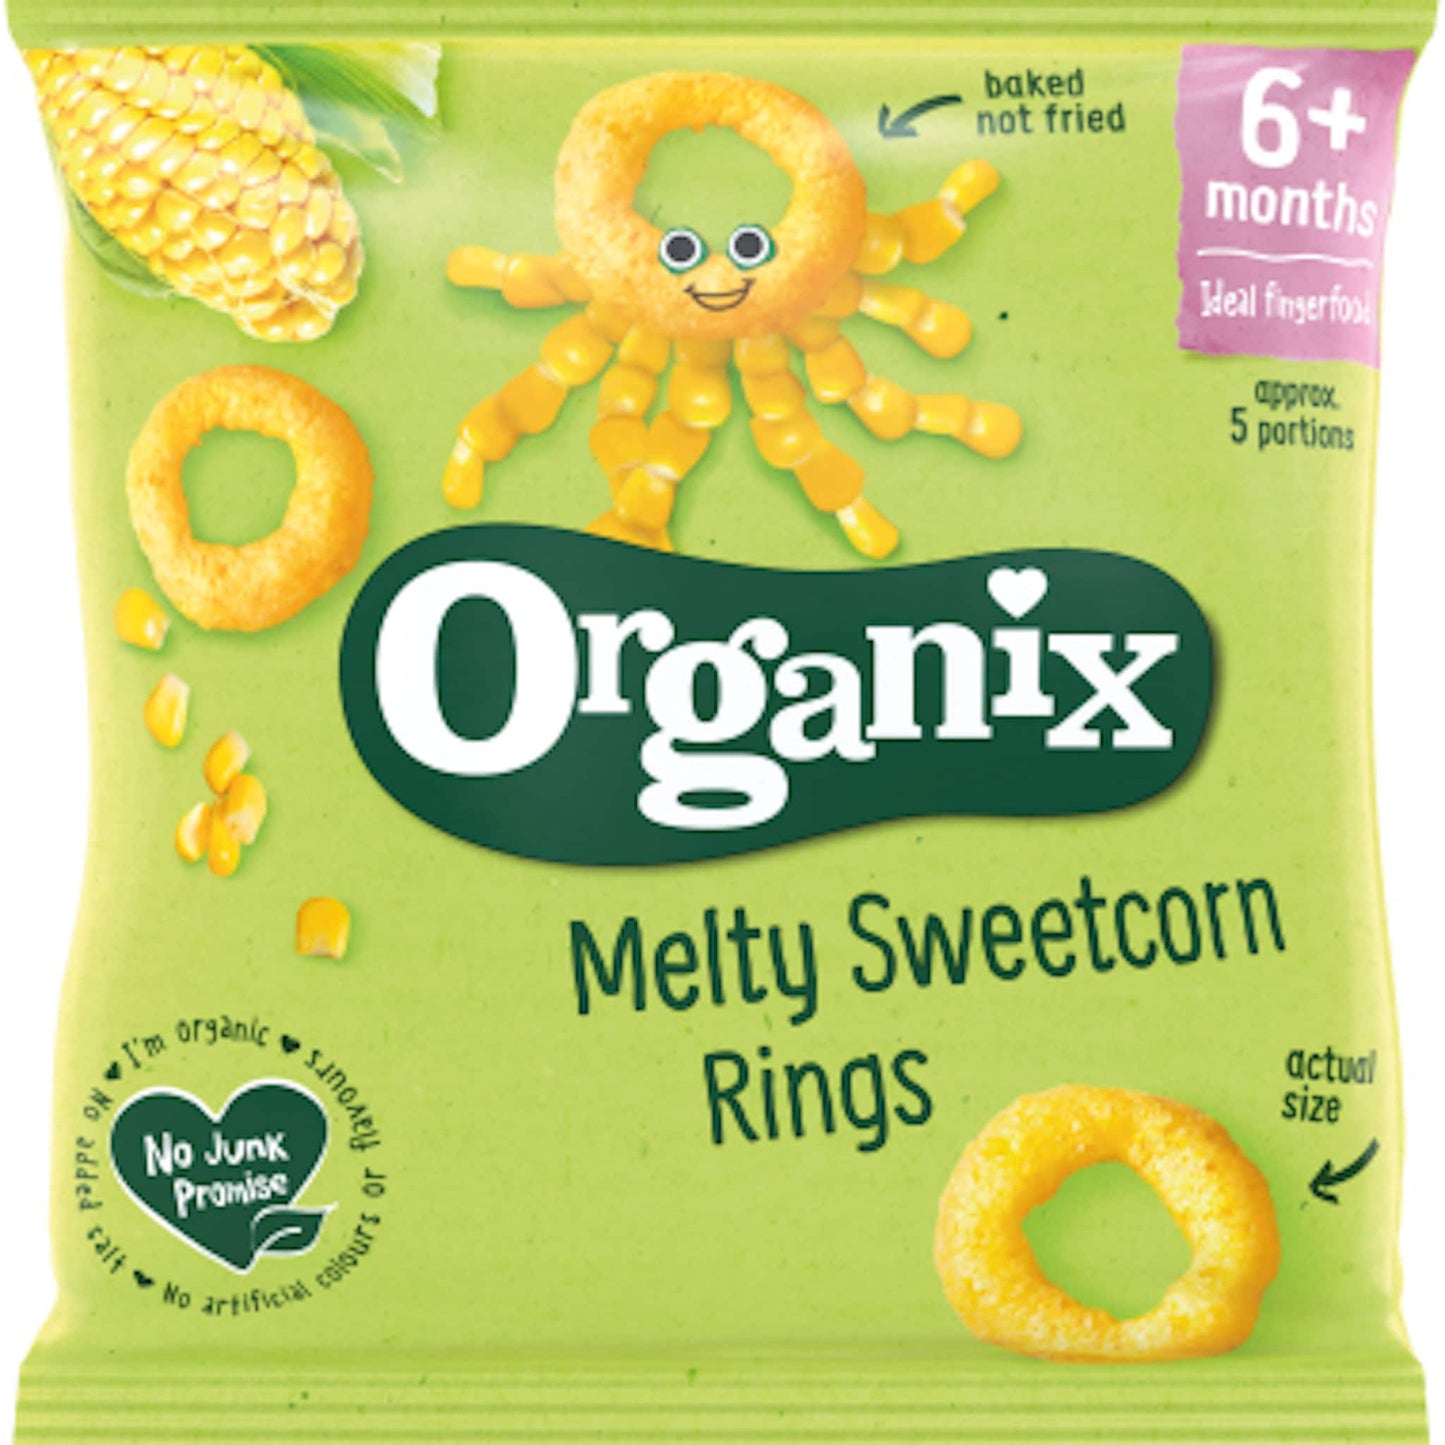 Organix Melty Sweetcorn Rings